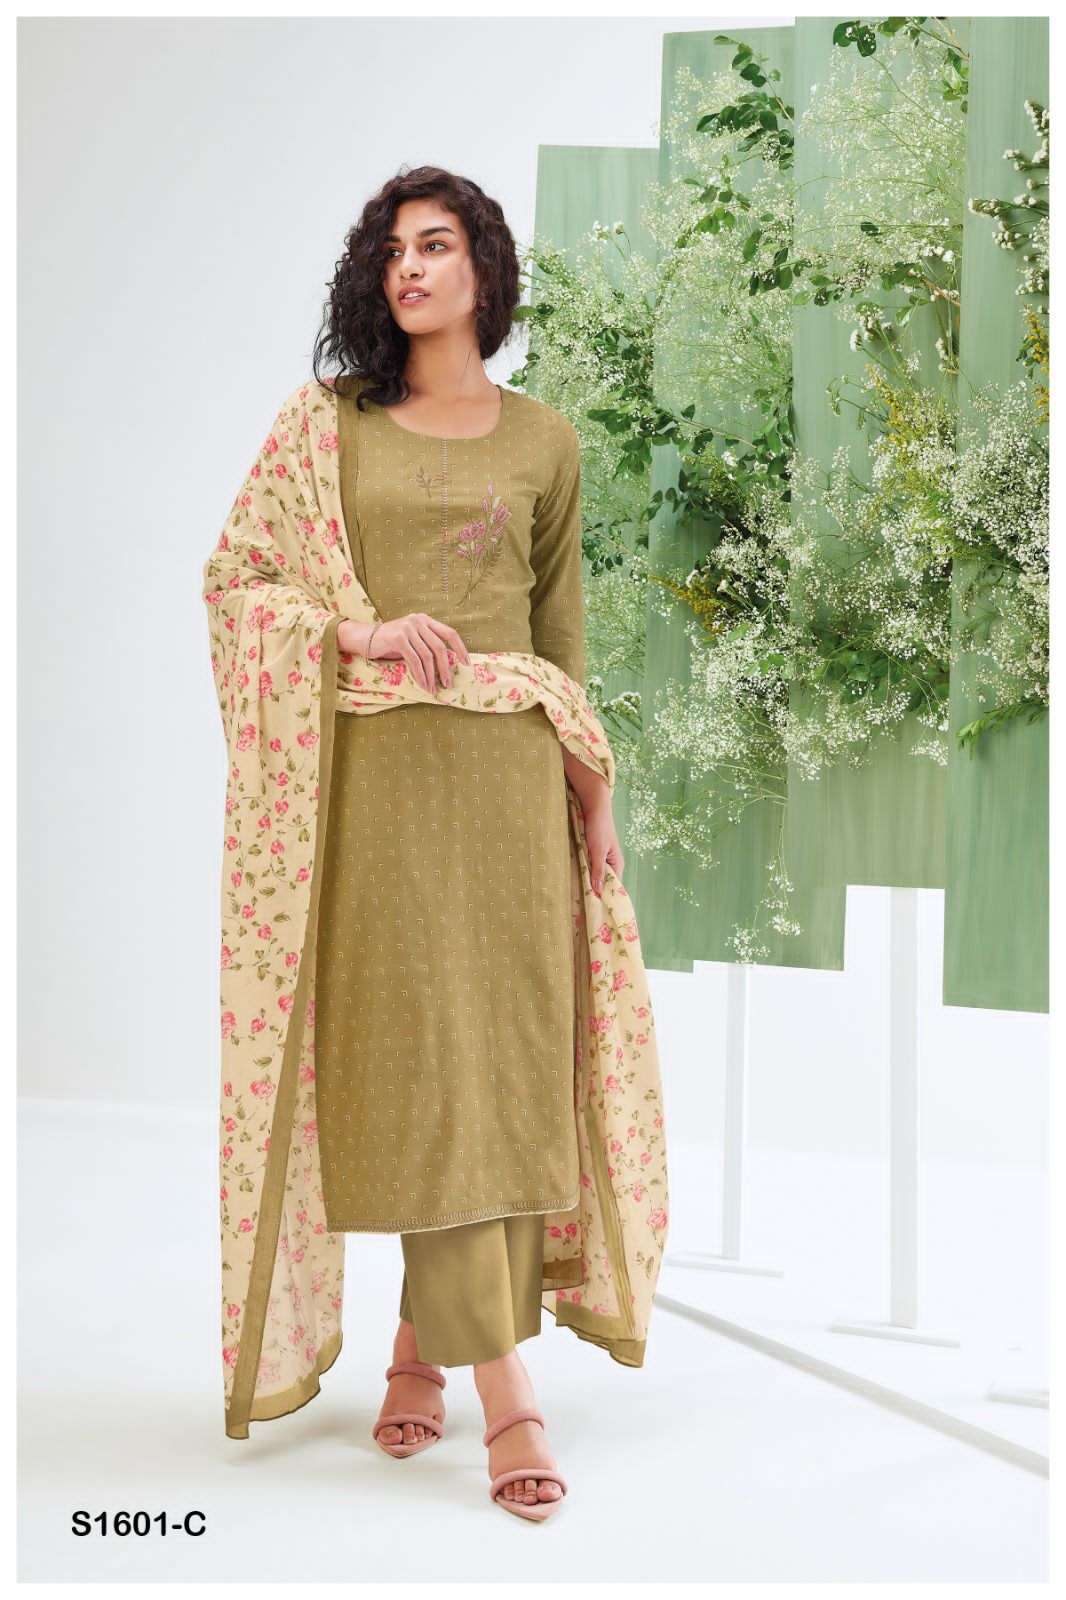 ganga lipika 1601 series indian designer salwar kameez latest catalogue wholesaler surat